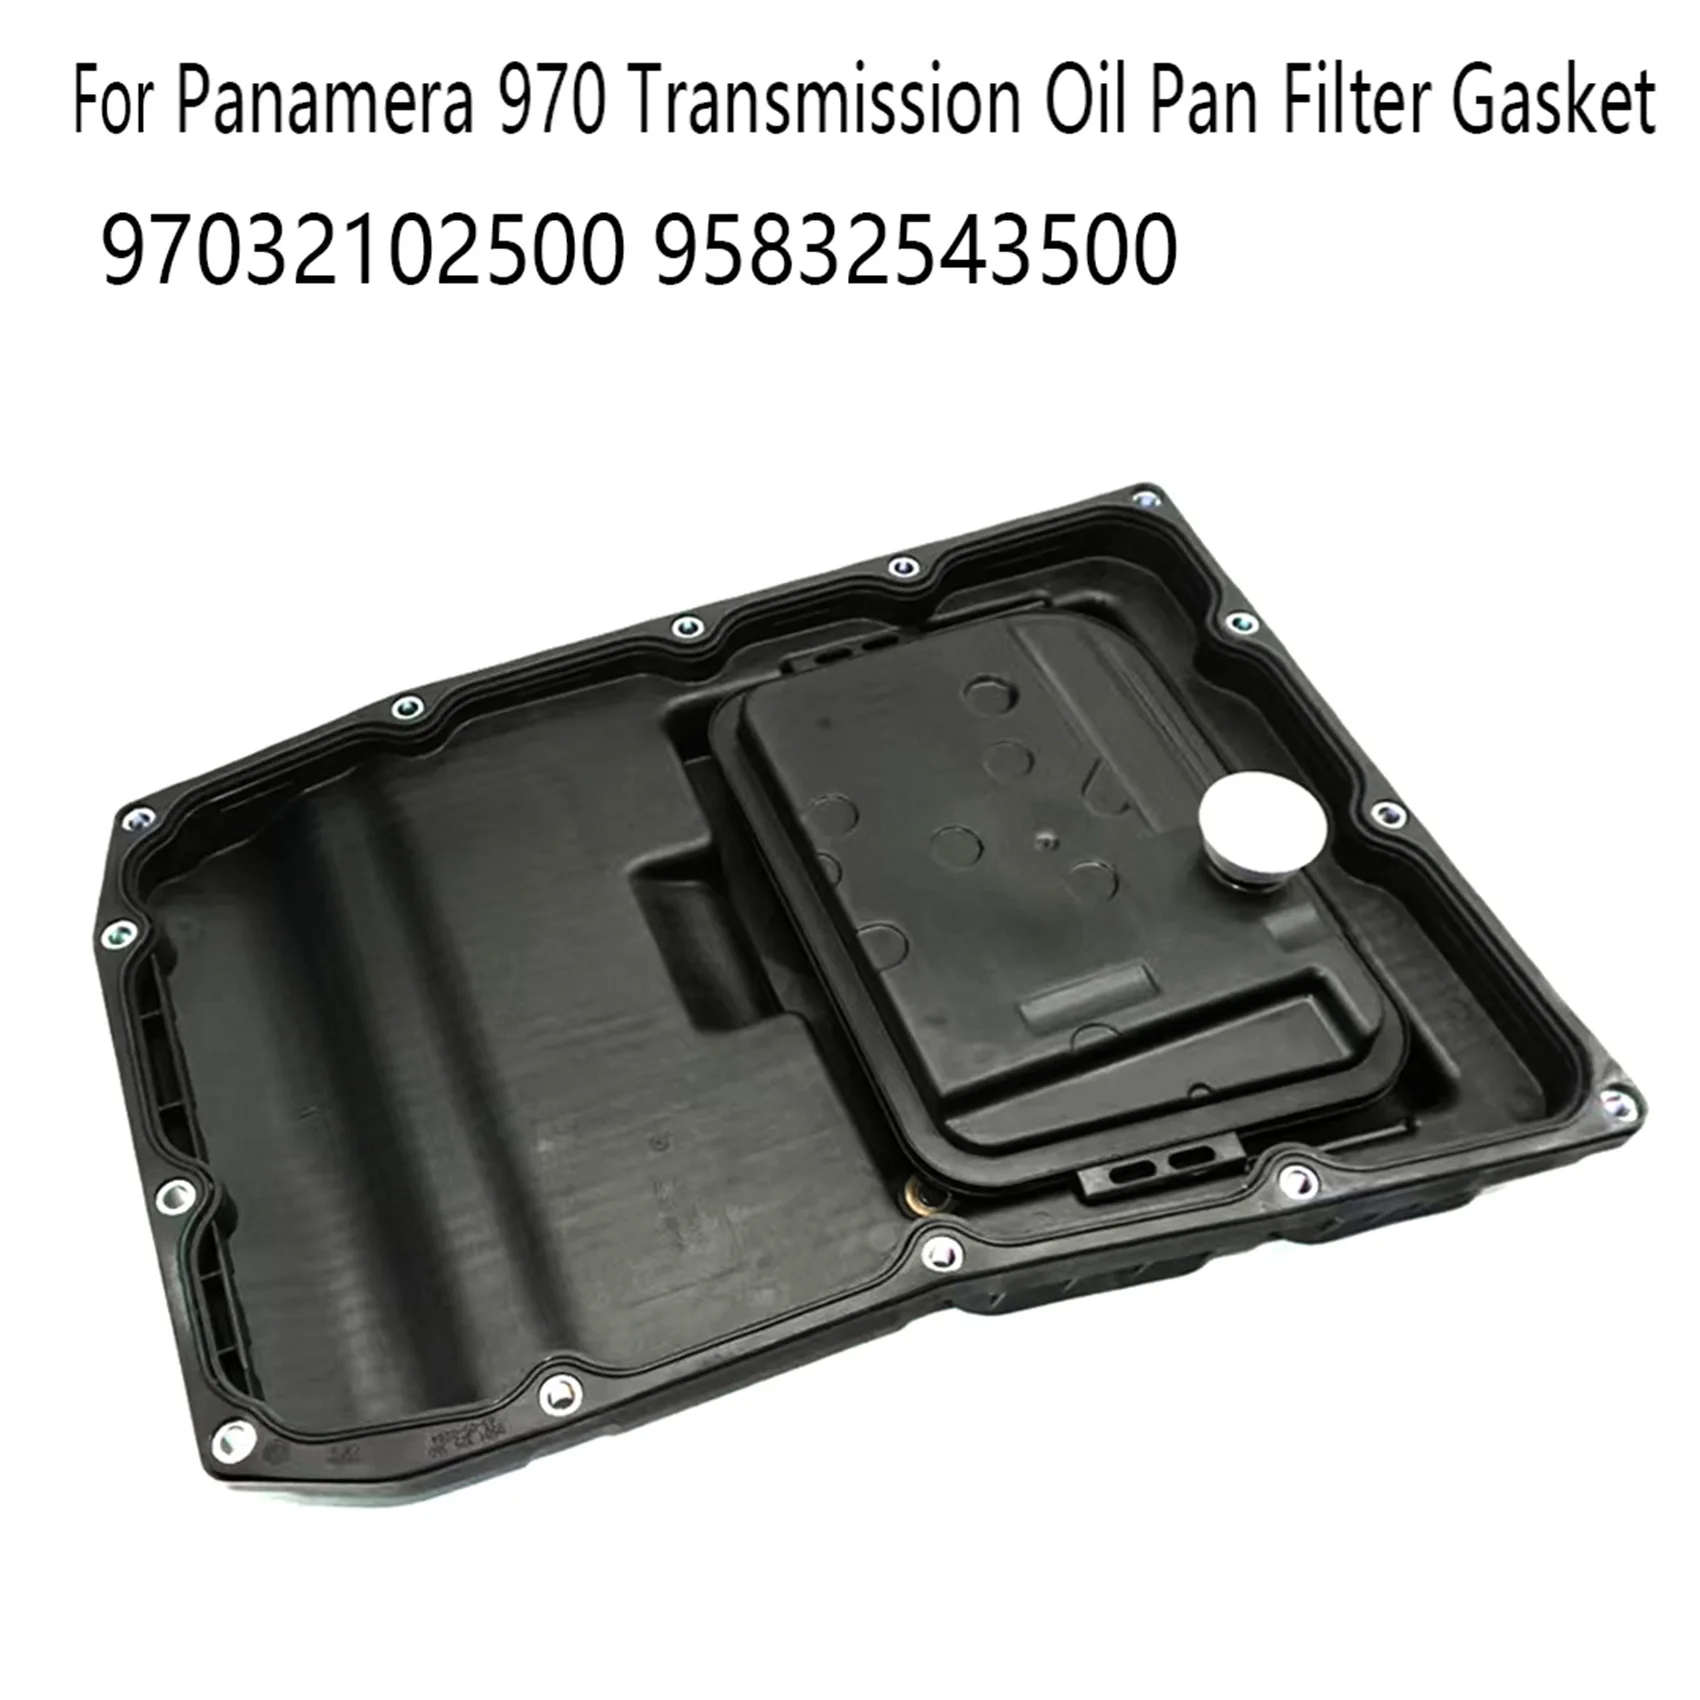 

For Porsche-Panamera 970 Transmission Oil Pan Filter Gasket 97032102500 95832543500